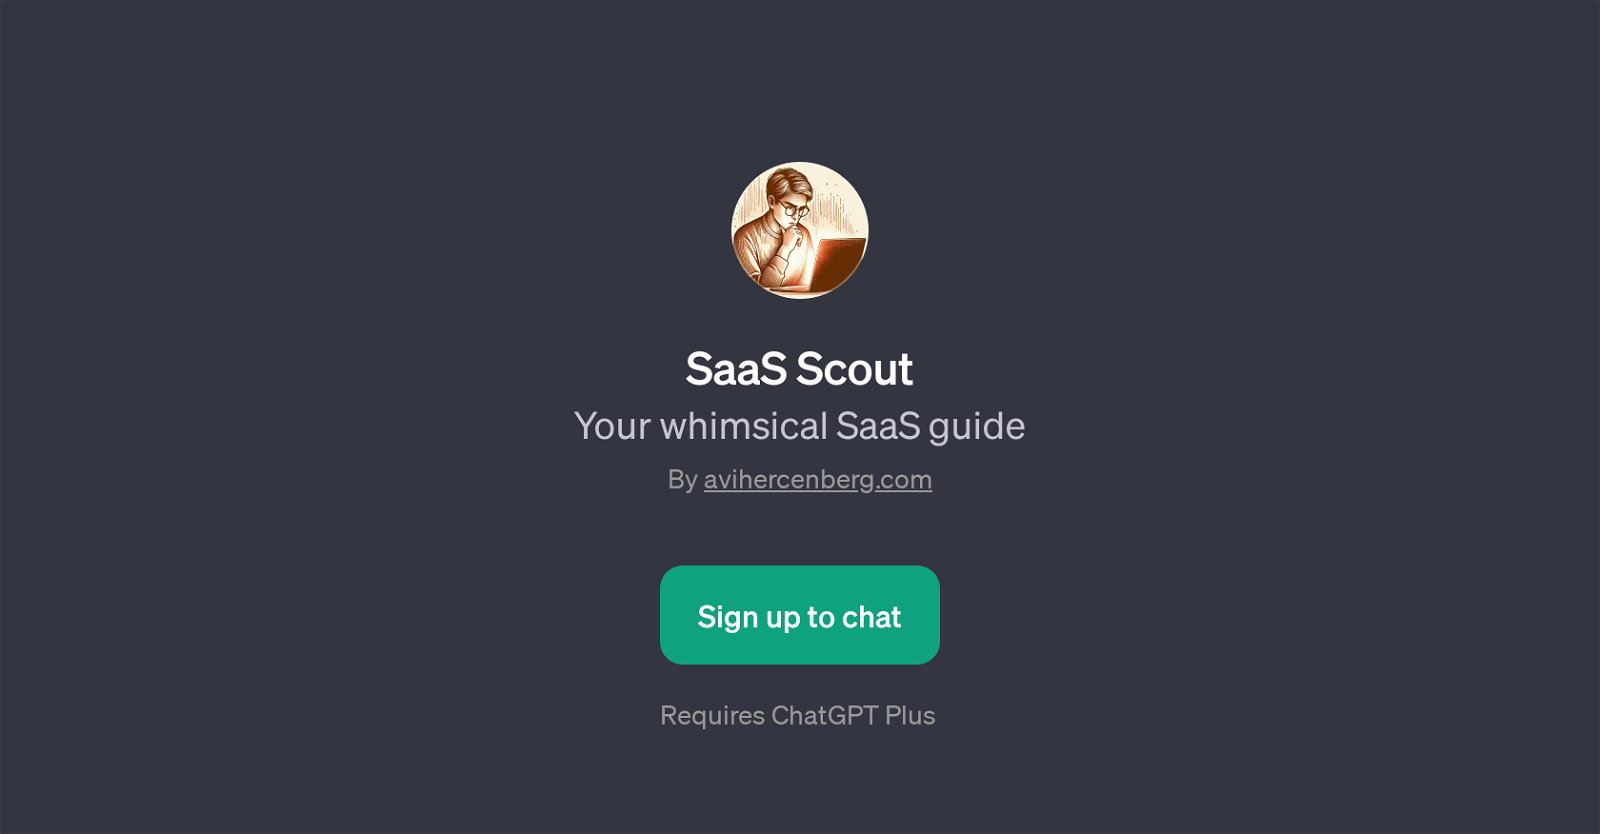 SaaS Scout website